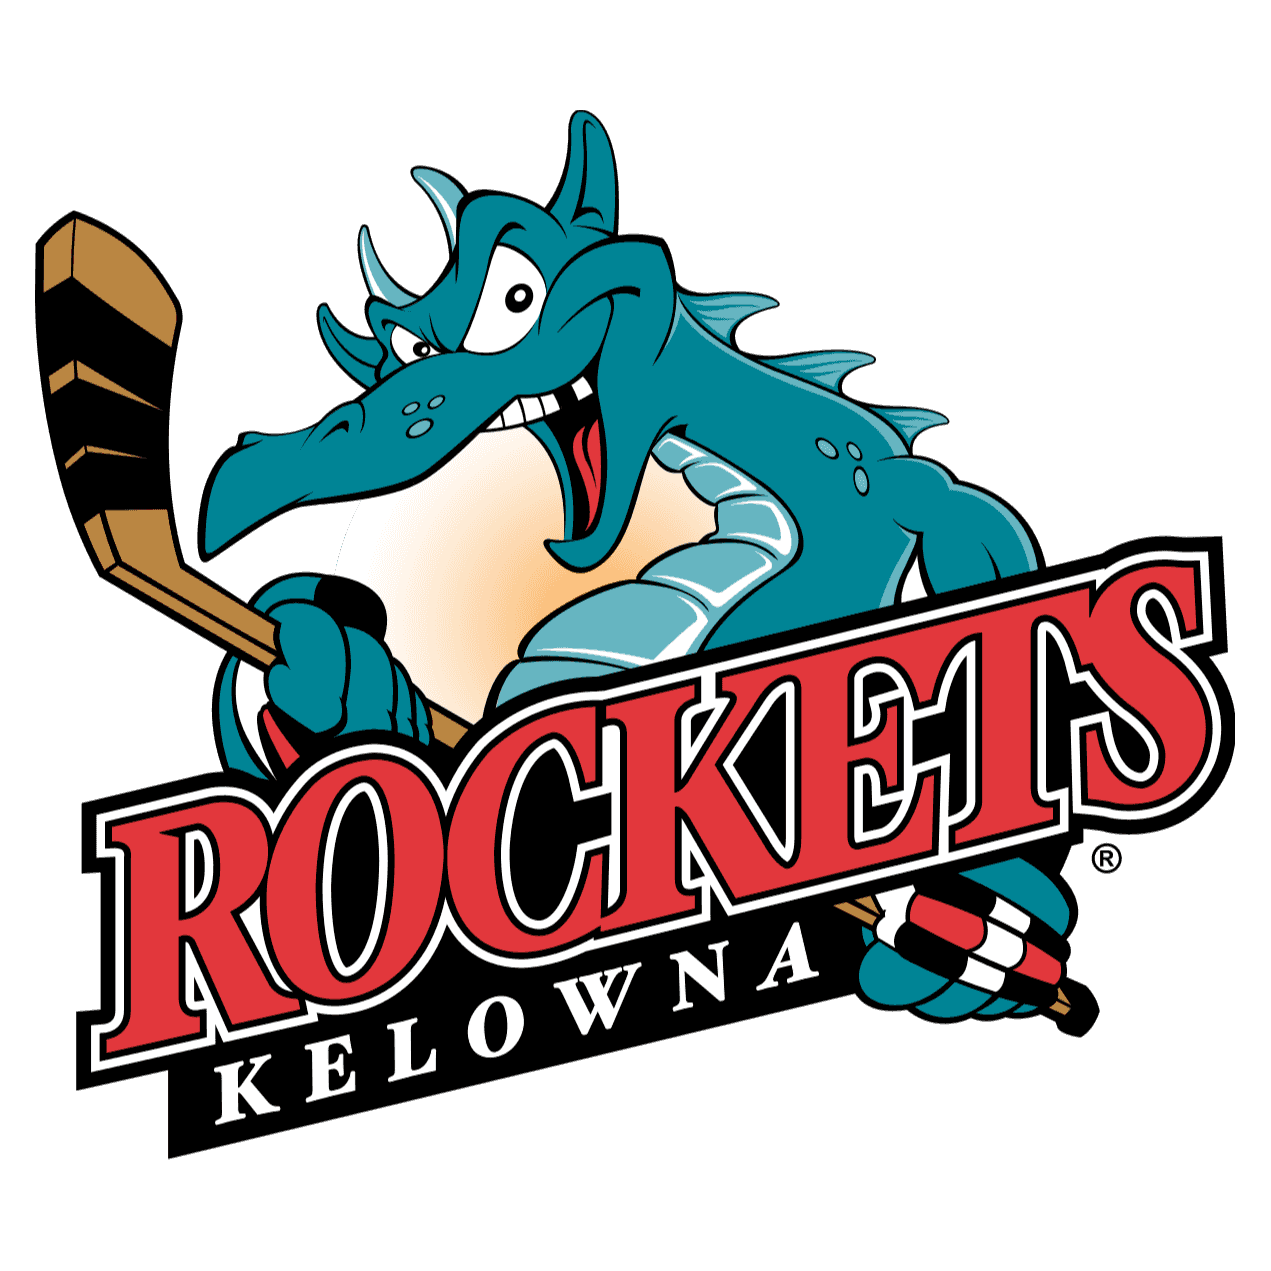 <p><span class="ql-font-roboto">Kelowna Rockets</span></p> logo